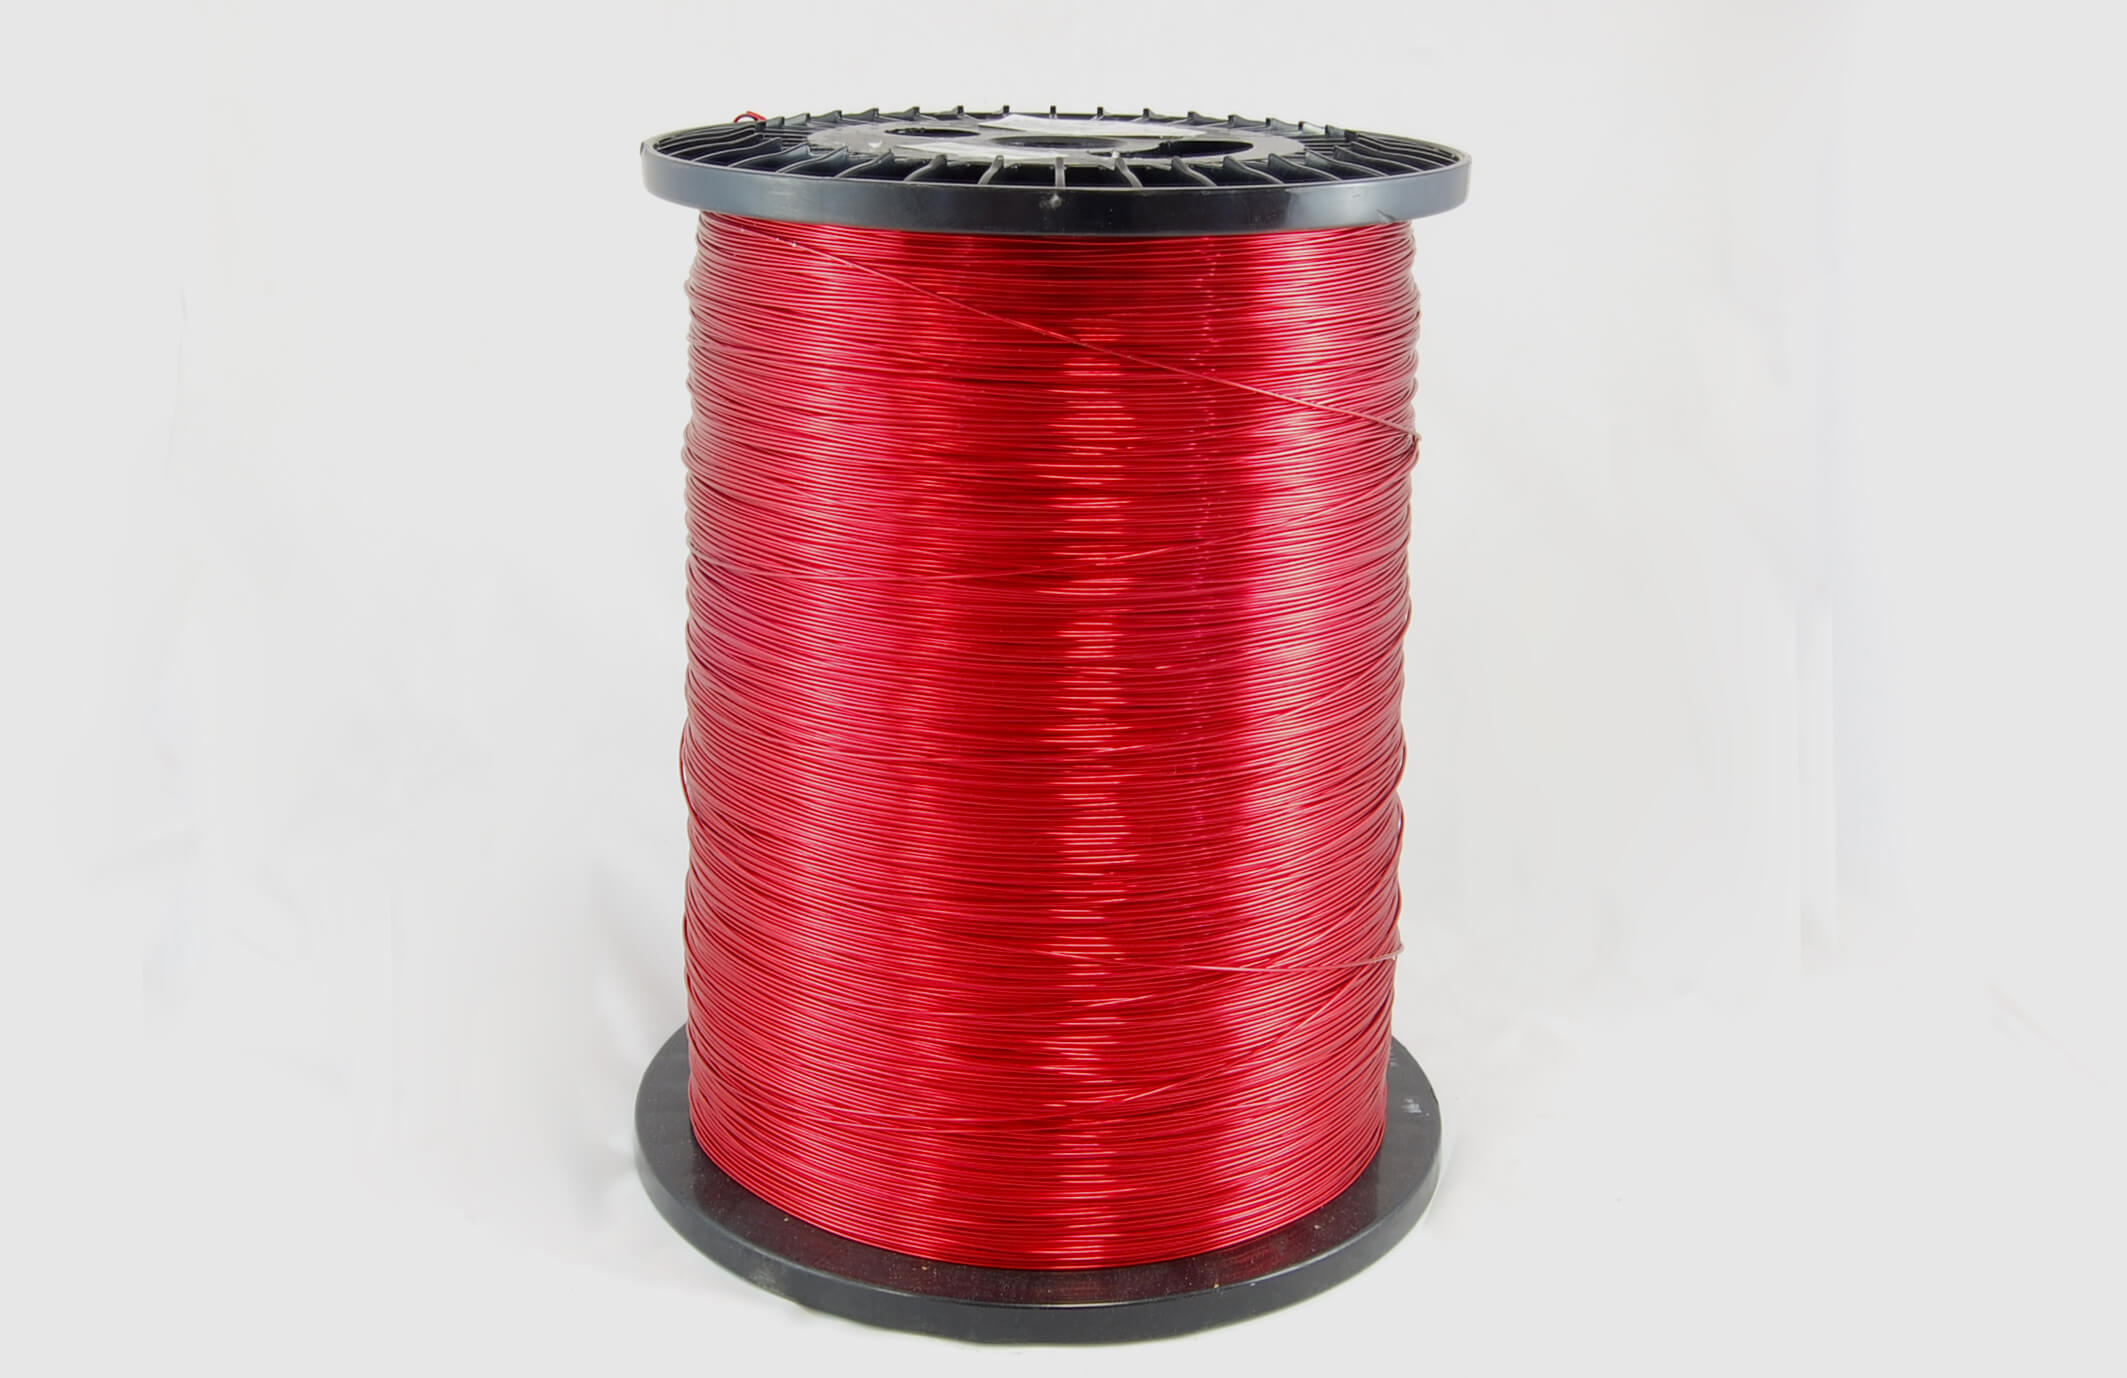 #16 Heavy Nysol  Round HNSR MW 80 Copper Magnet Wire 155°C, red, 85 LB box (average wght.)